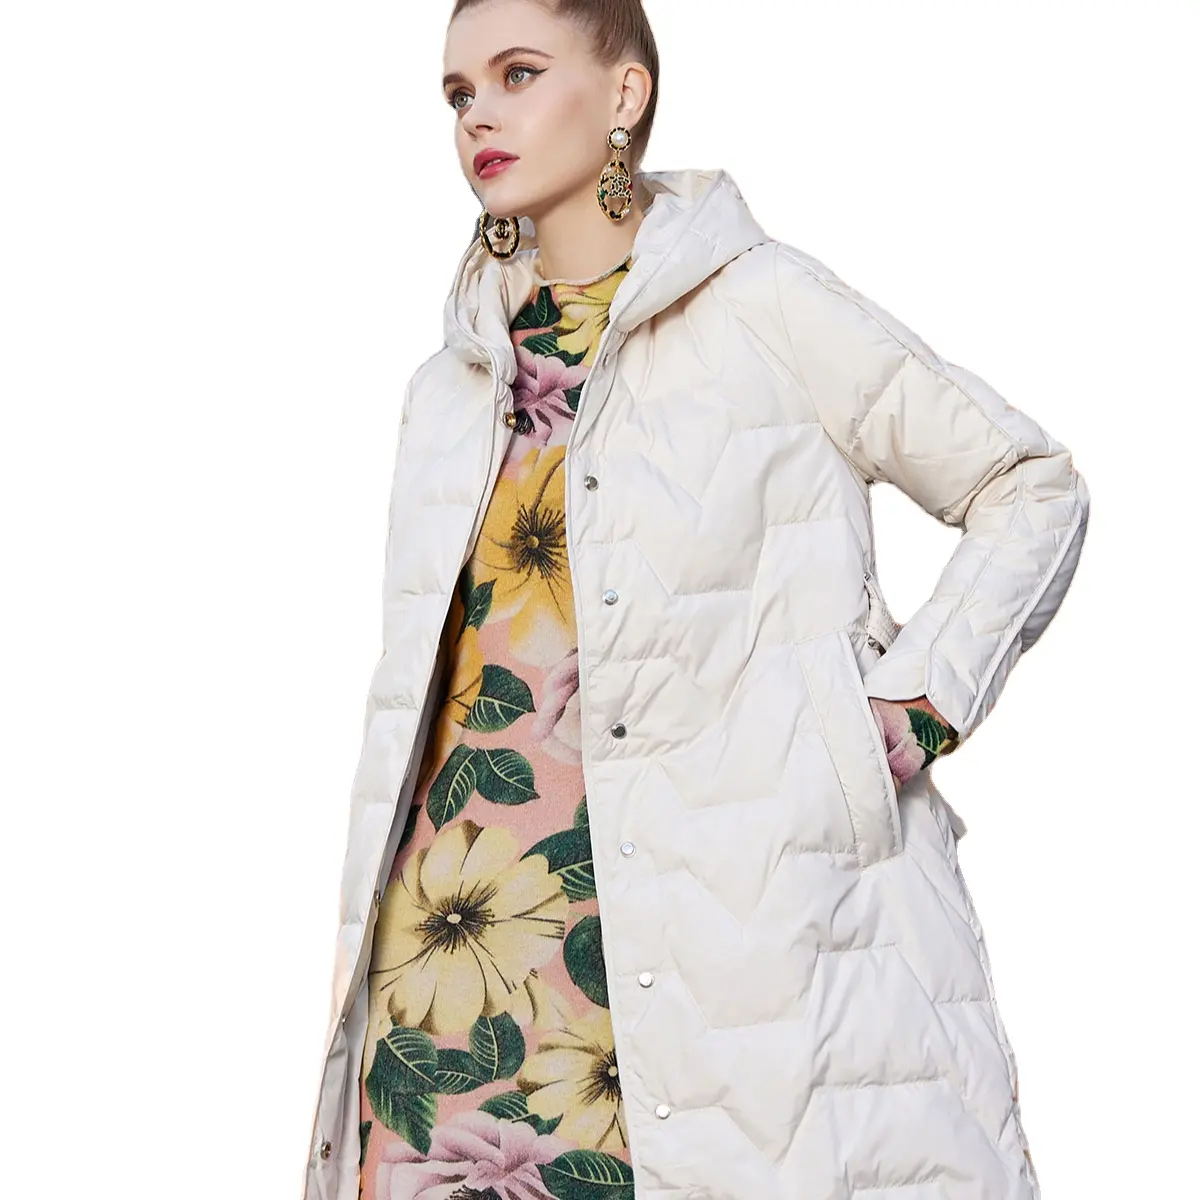 Abrigo de lana blanco para mujer y mujer, oferta, colección de diseño italiano CL, el mejor invierno